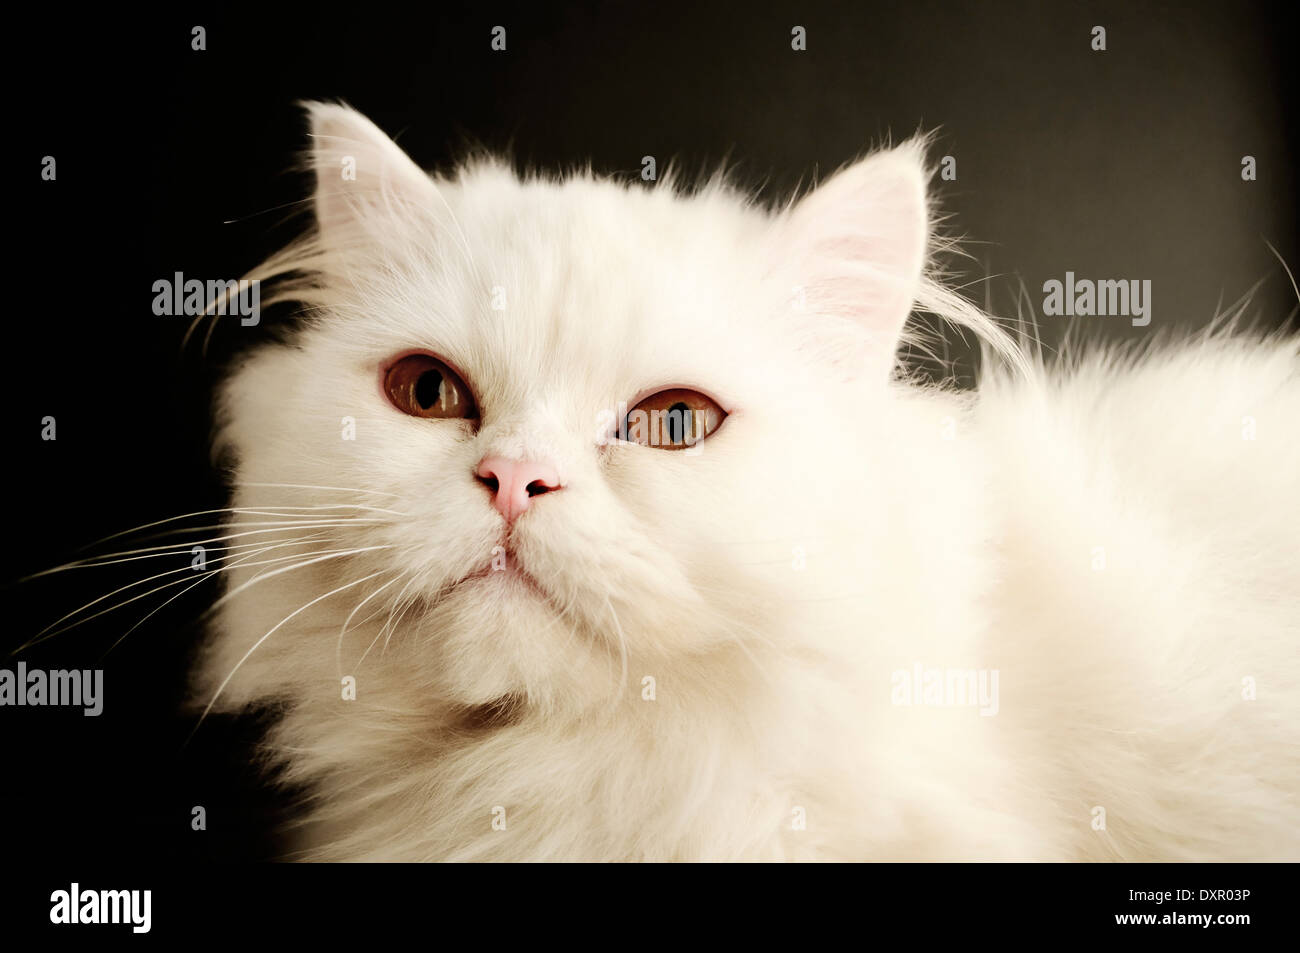 White cat Stock Photo